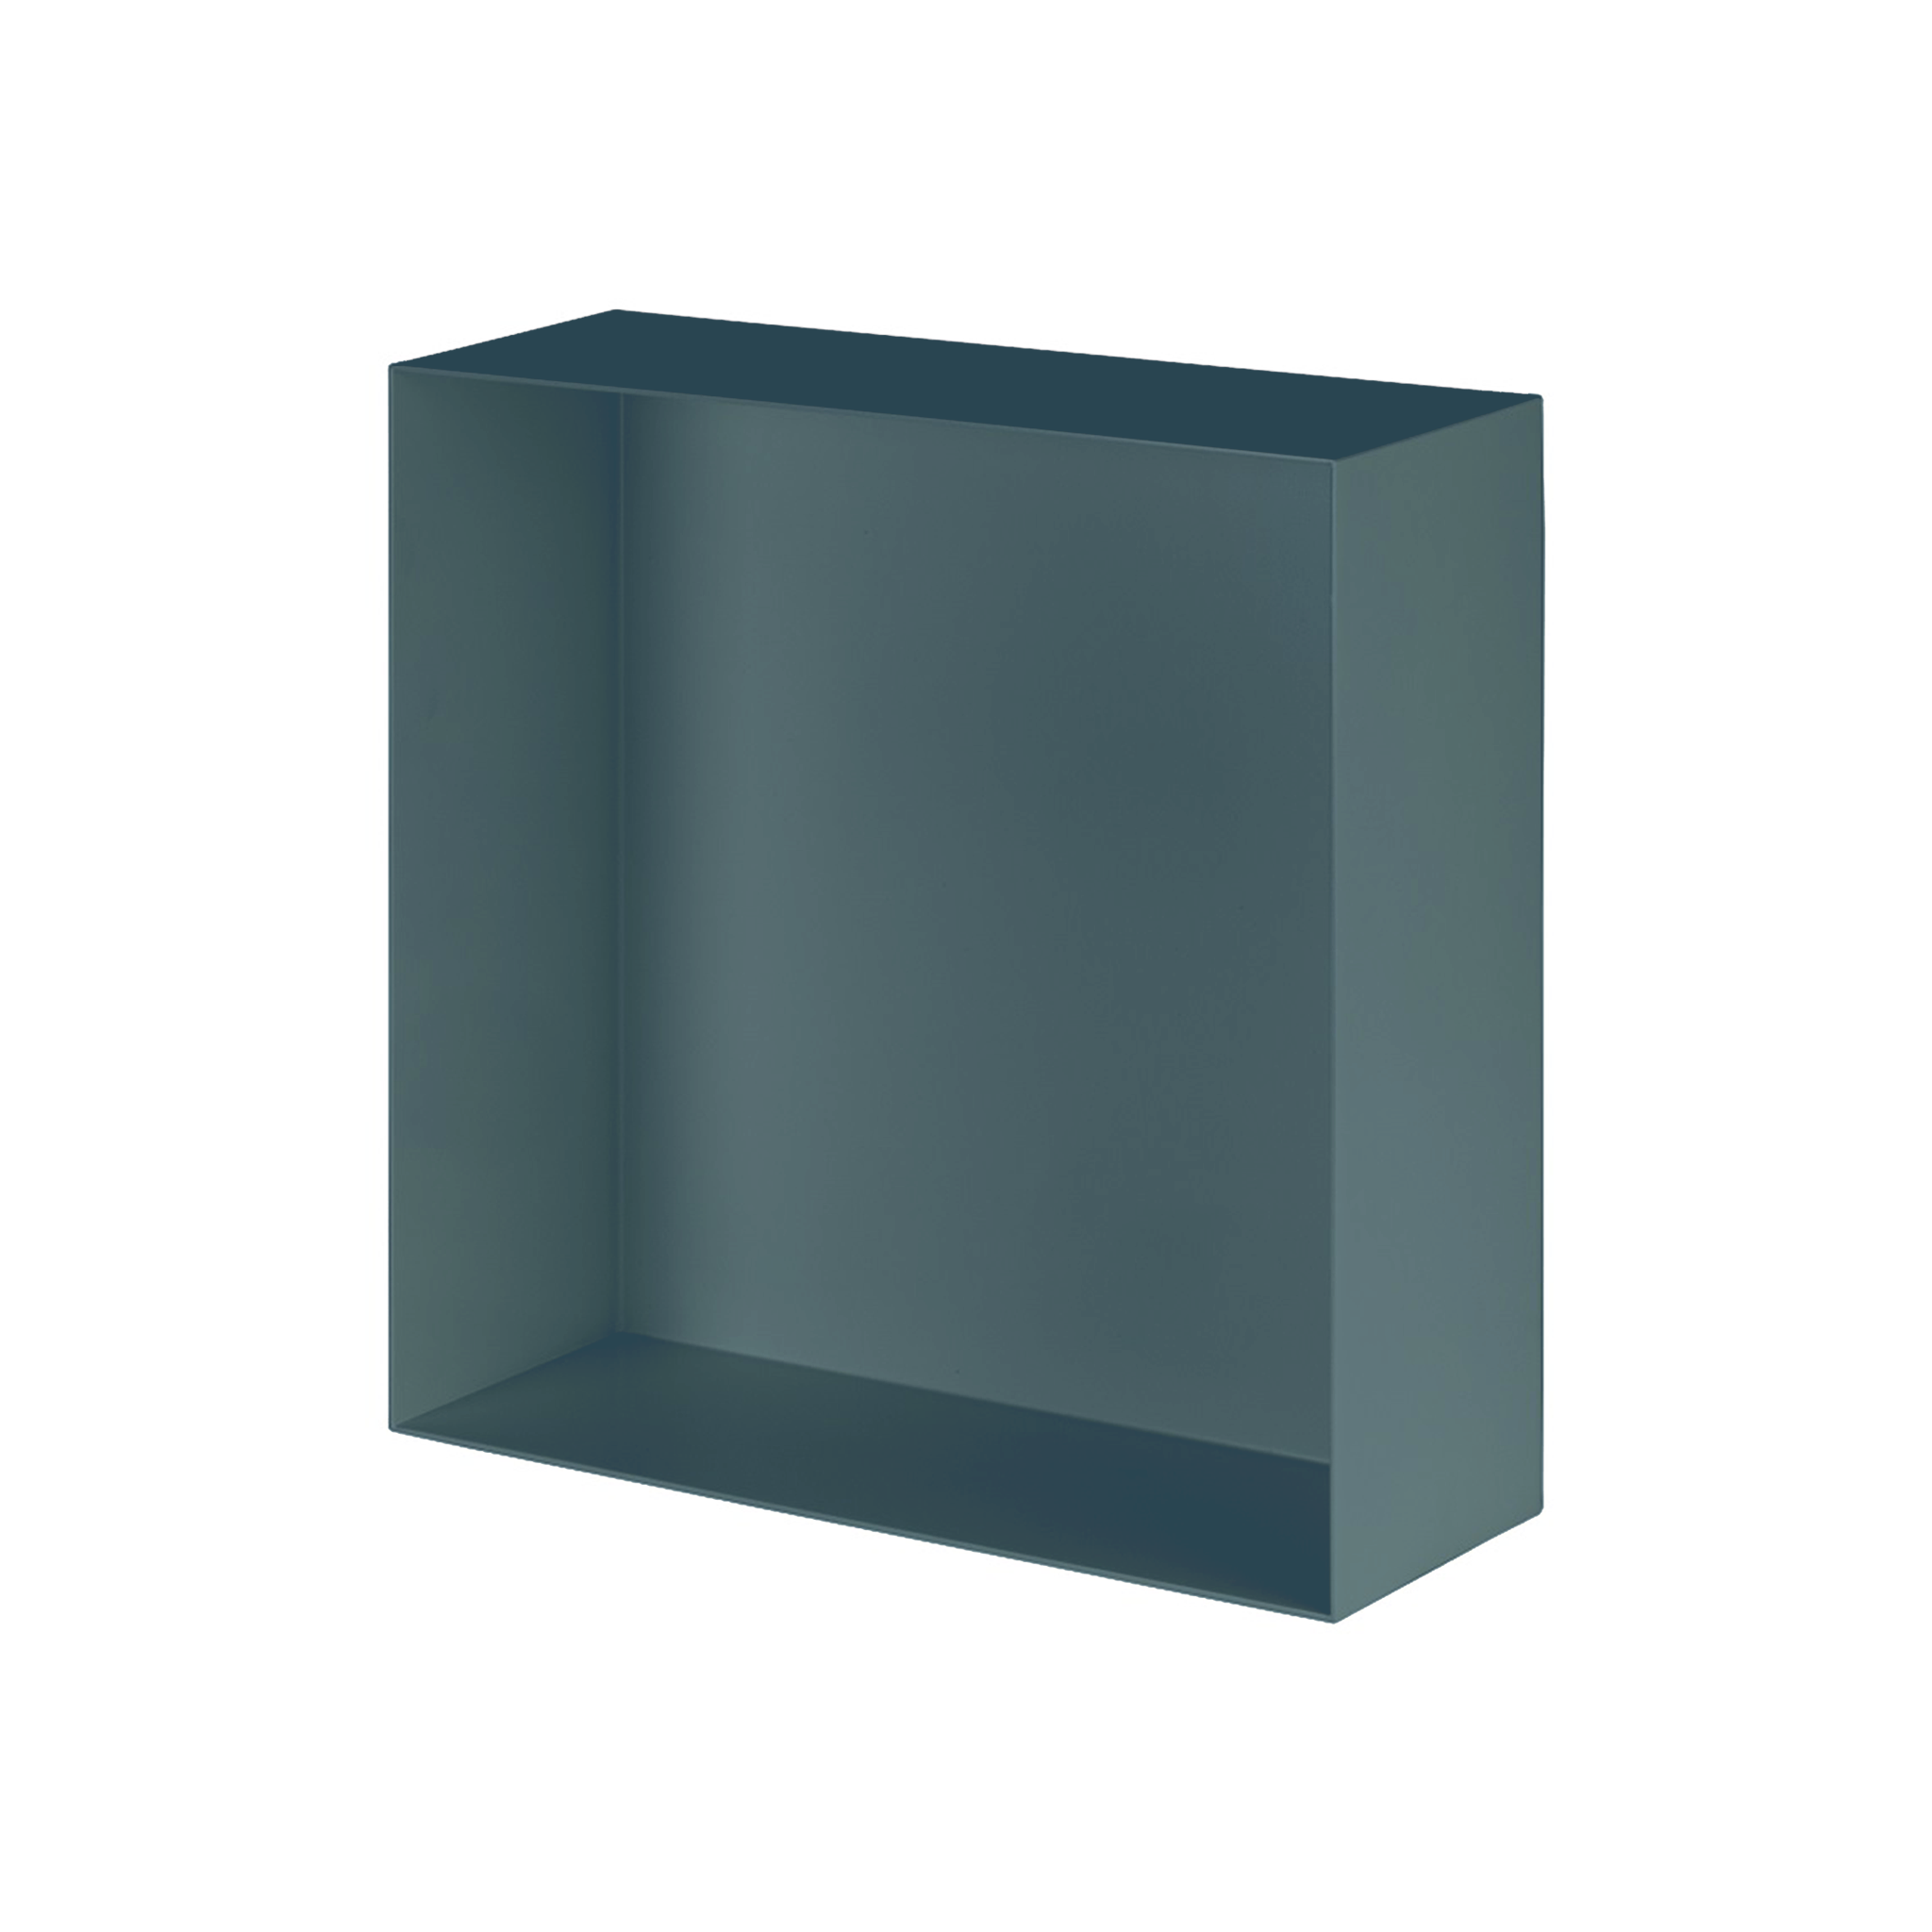 Valli Home – V-Box, Nicchia portaoggetti in Metallo smaltato color Blu KK29, Misura 30X30 P. 10 cm – V-BOX.MLLO.30X30.29